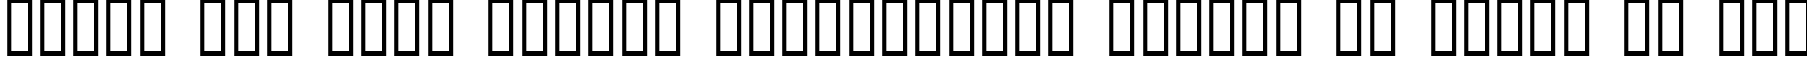 Пример написания шрифтом Barbed Type текста на русском